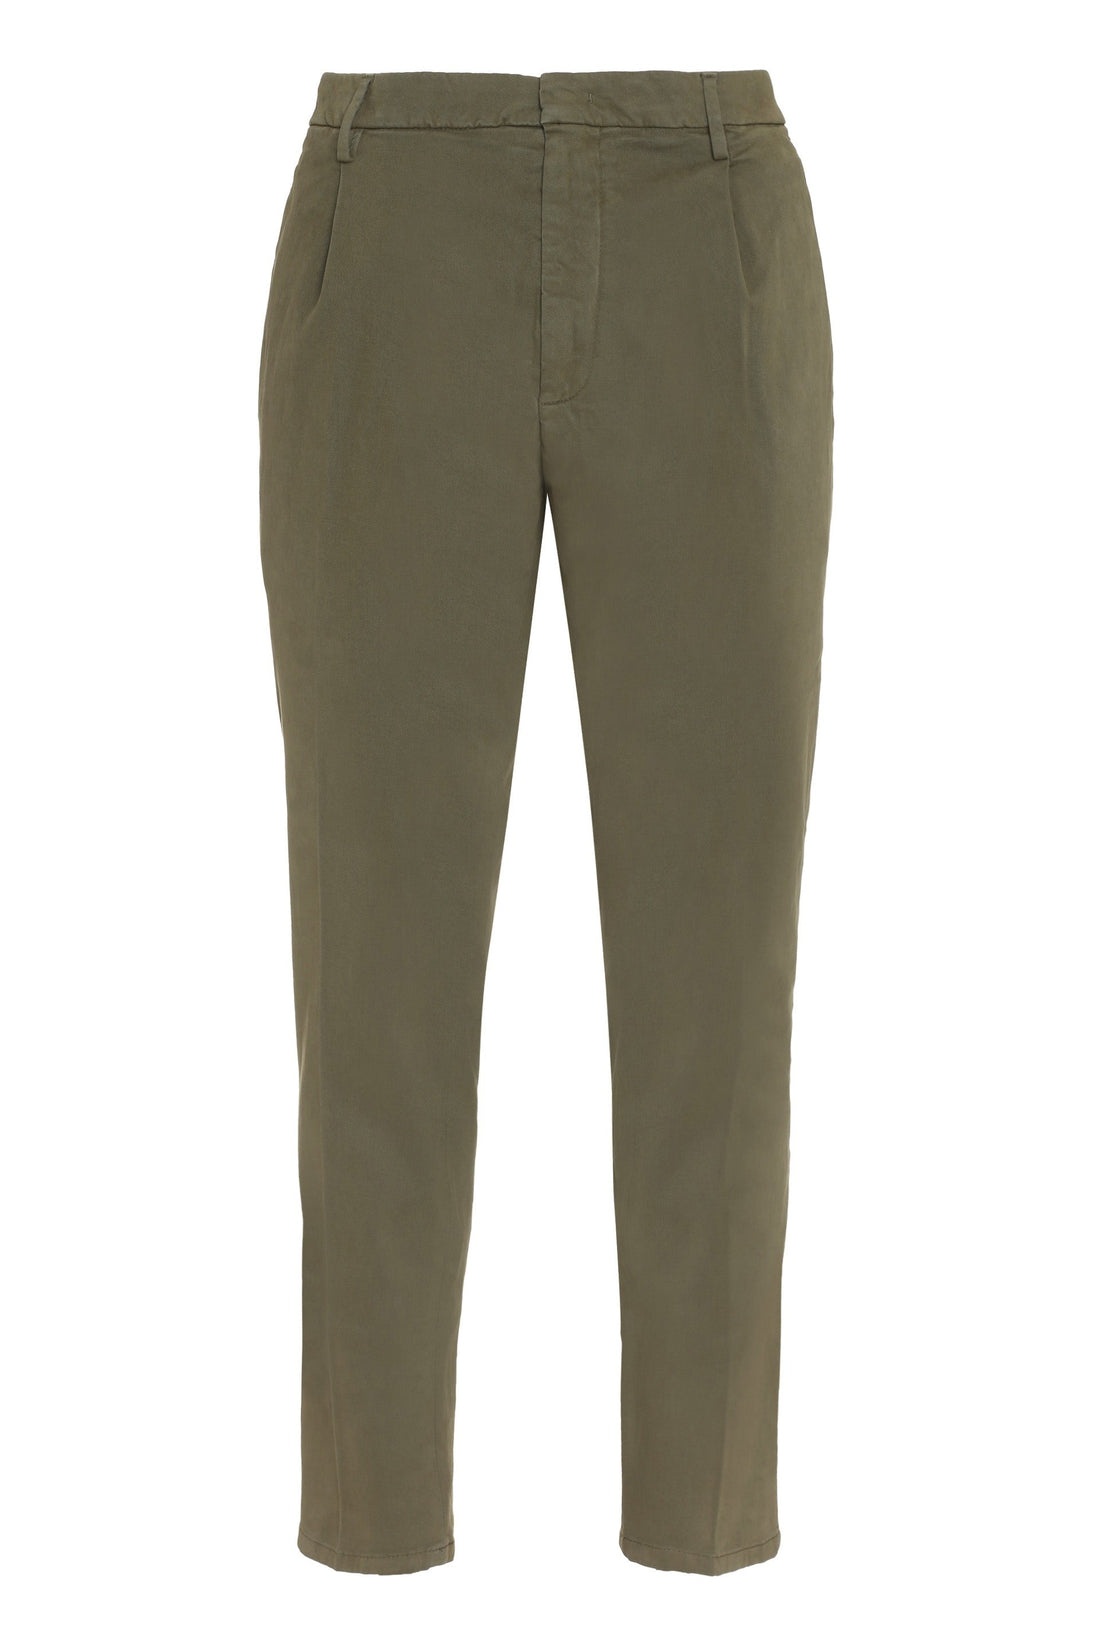 Dondup-OUTLET-SALE-Tyler cotton trousers-ARCHIVIST